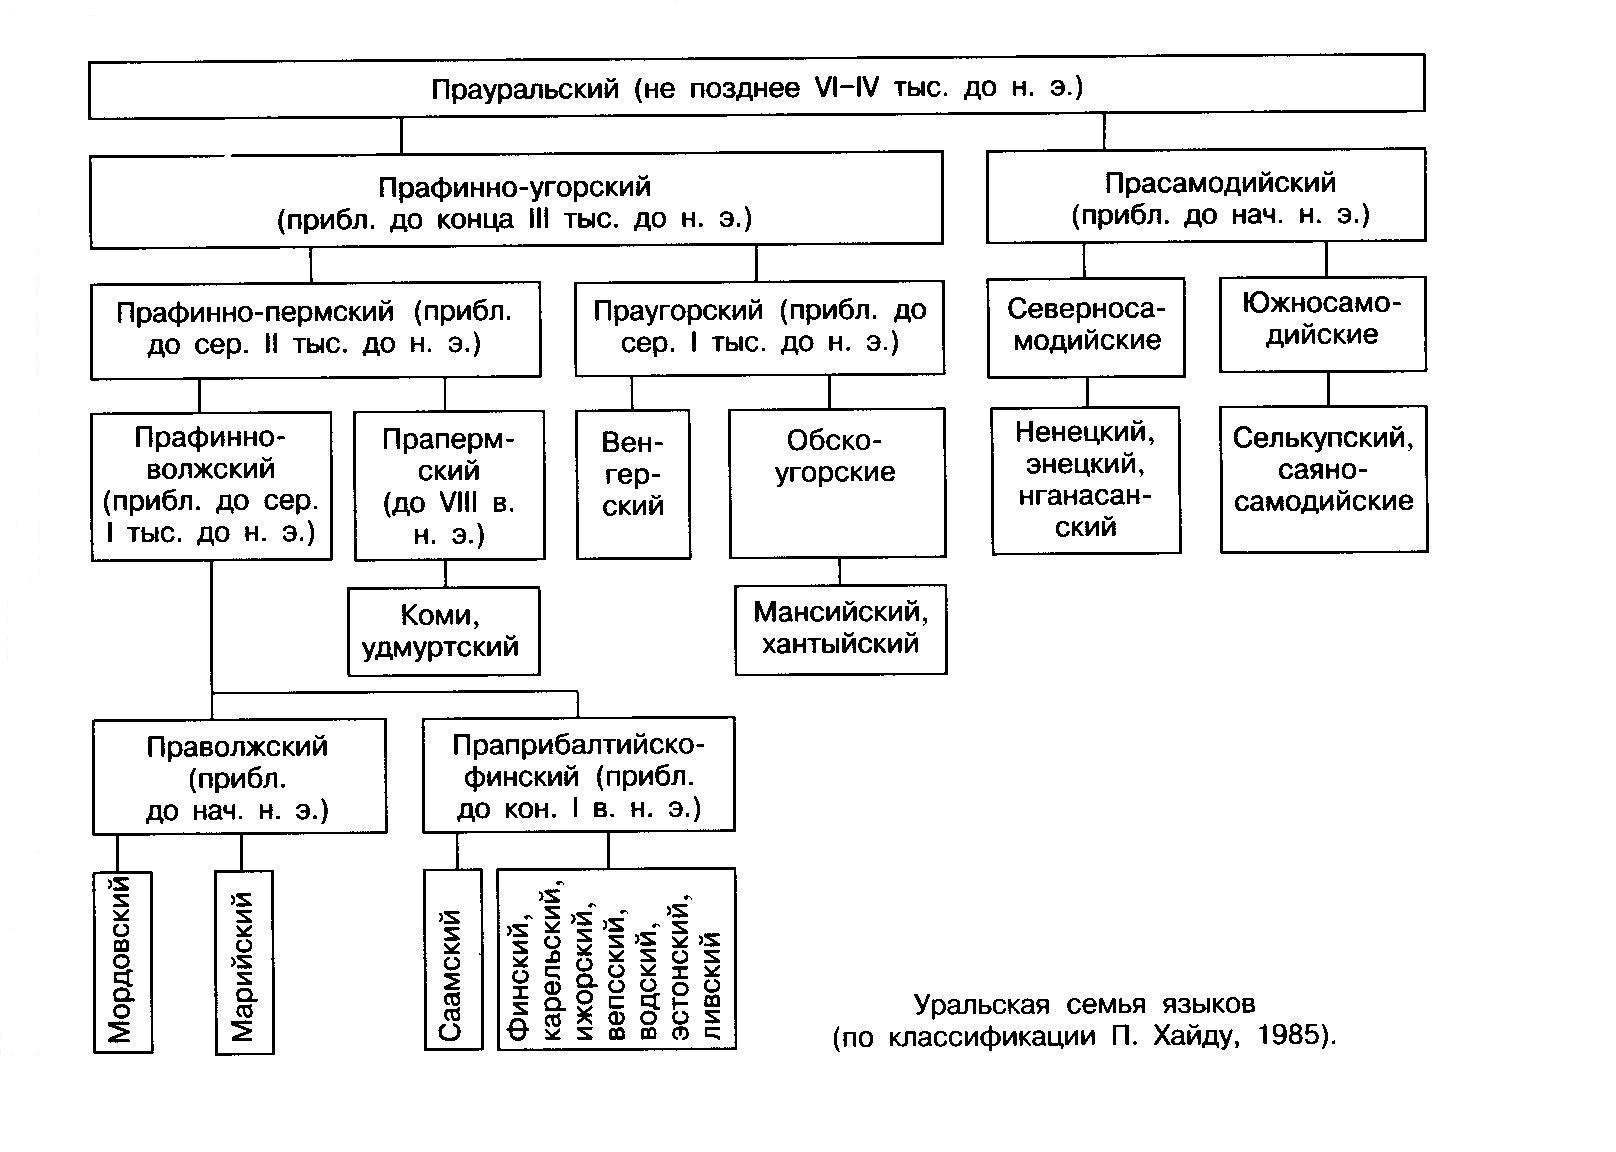 "Уральская семья языков (по классификации П. Хайду, 1985)."